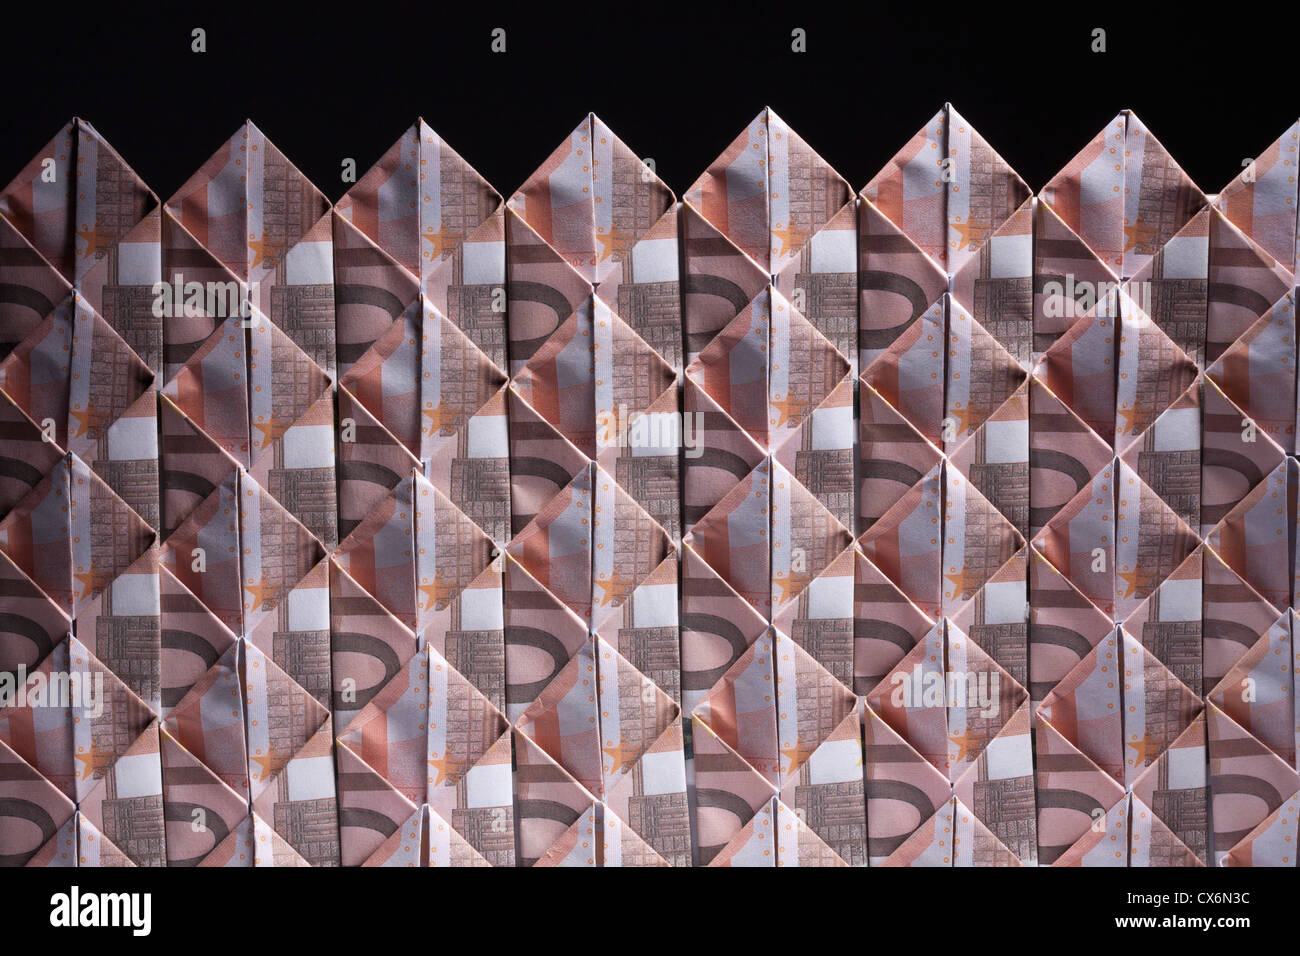 Dieci banconote in euro ripiegato in rombi e intrecciato Foto Stock